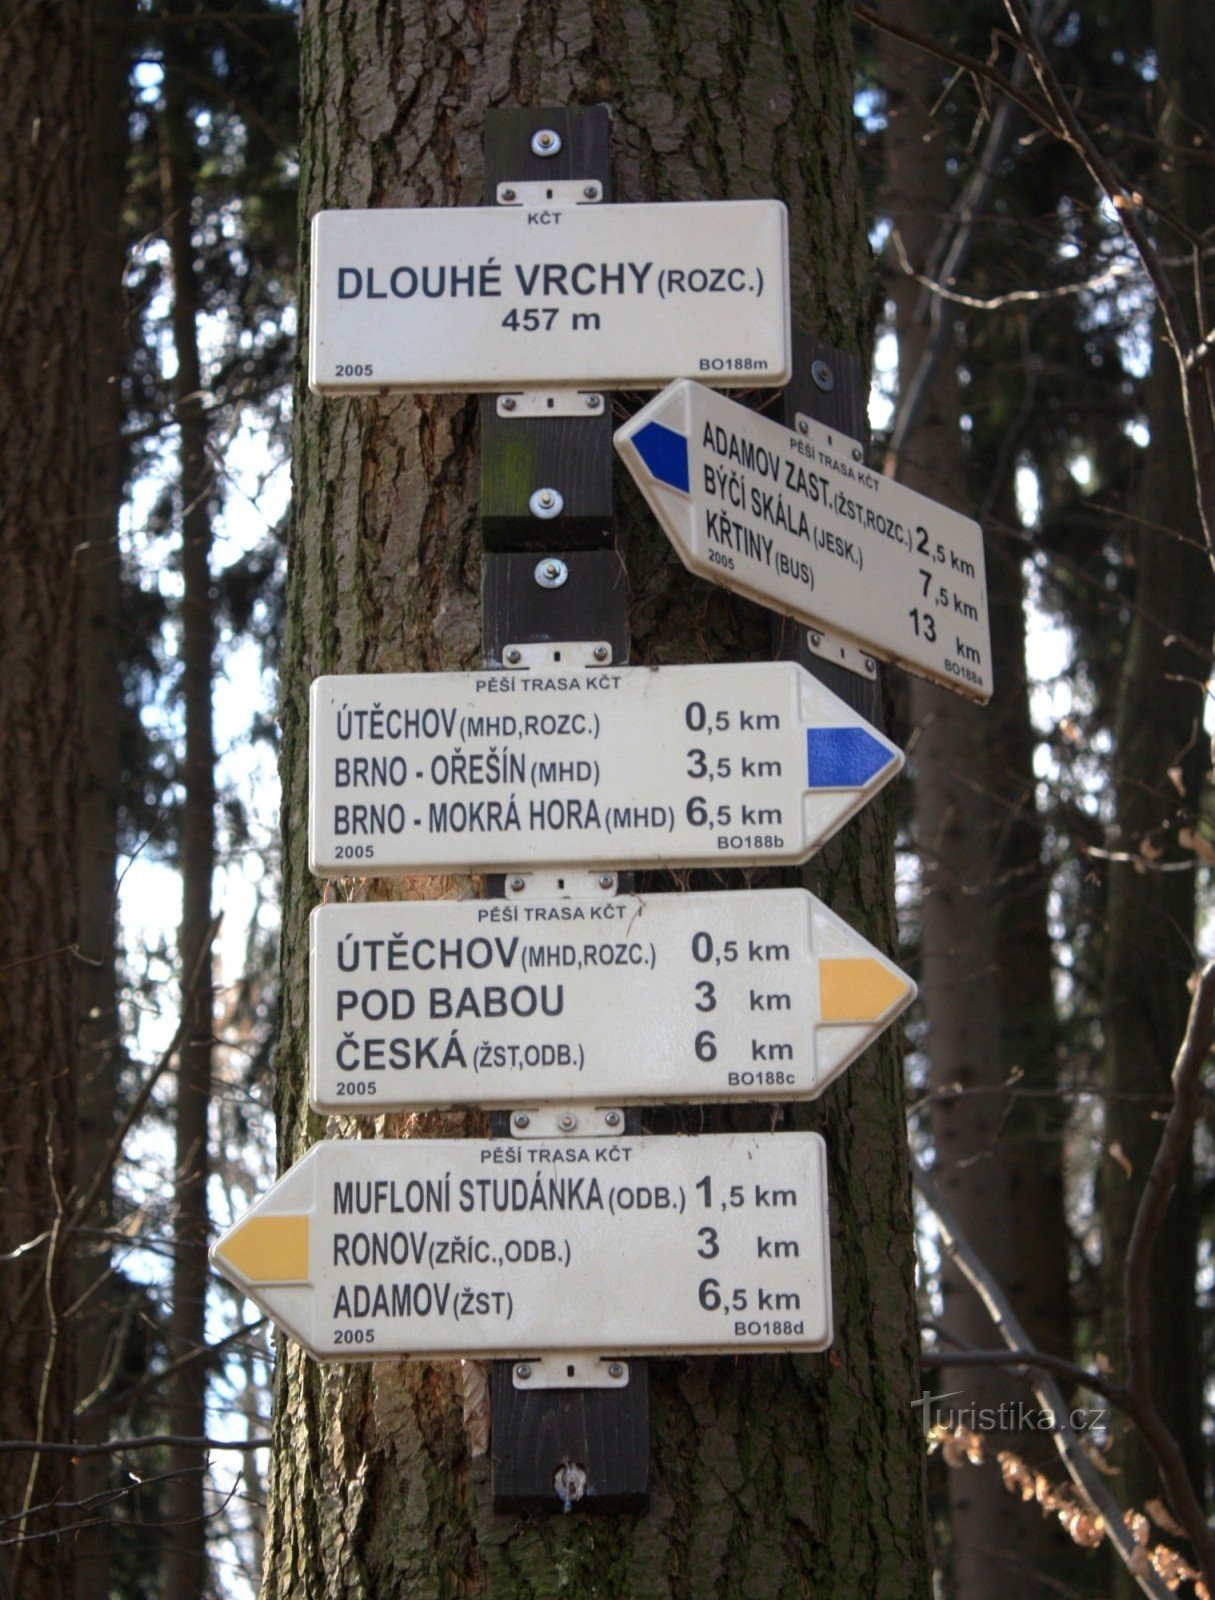 Răscruce turistică Dlouhé vrchy